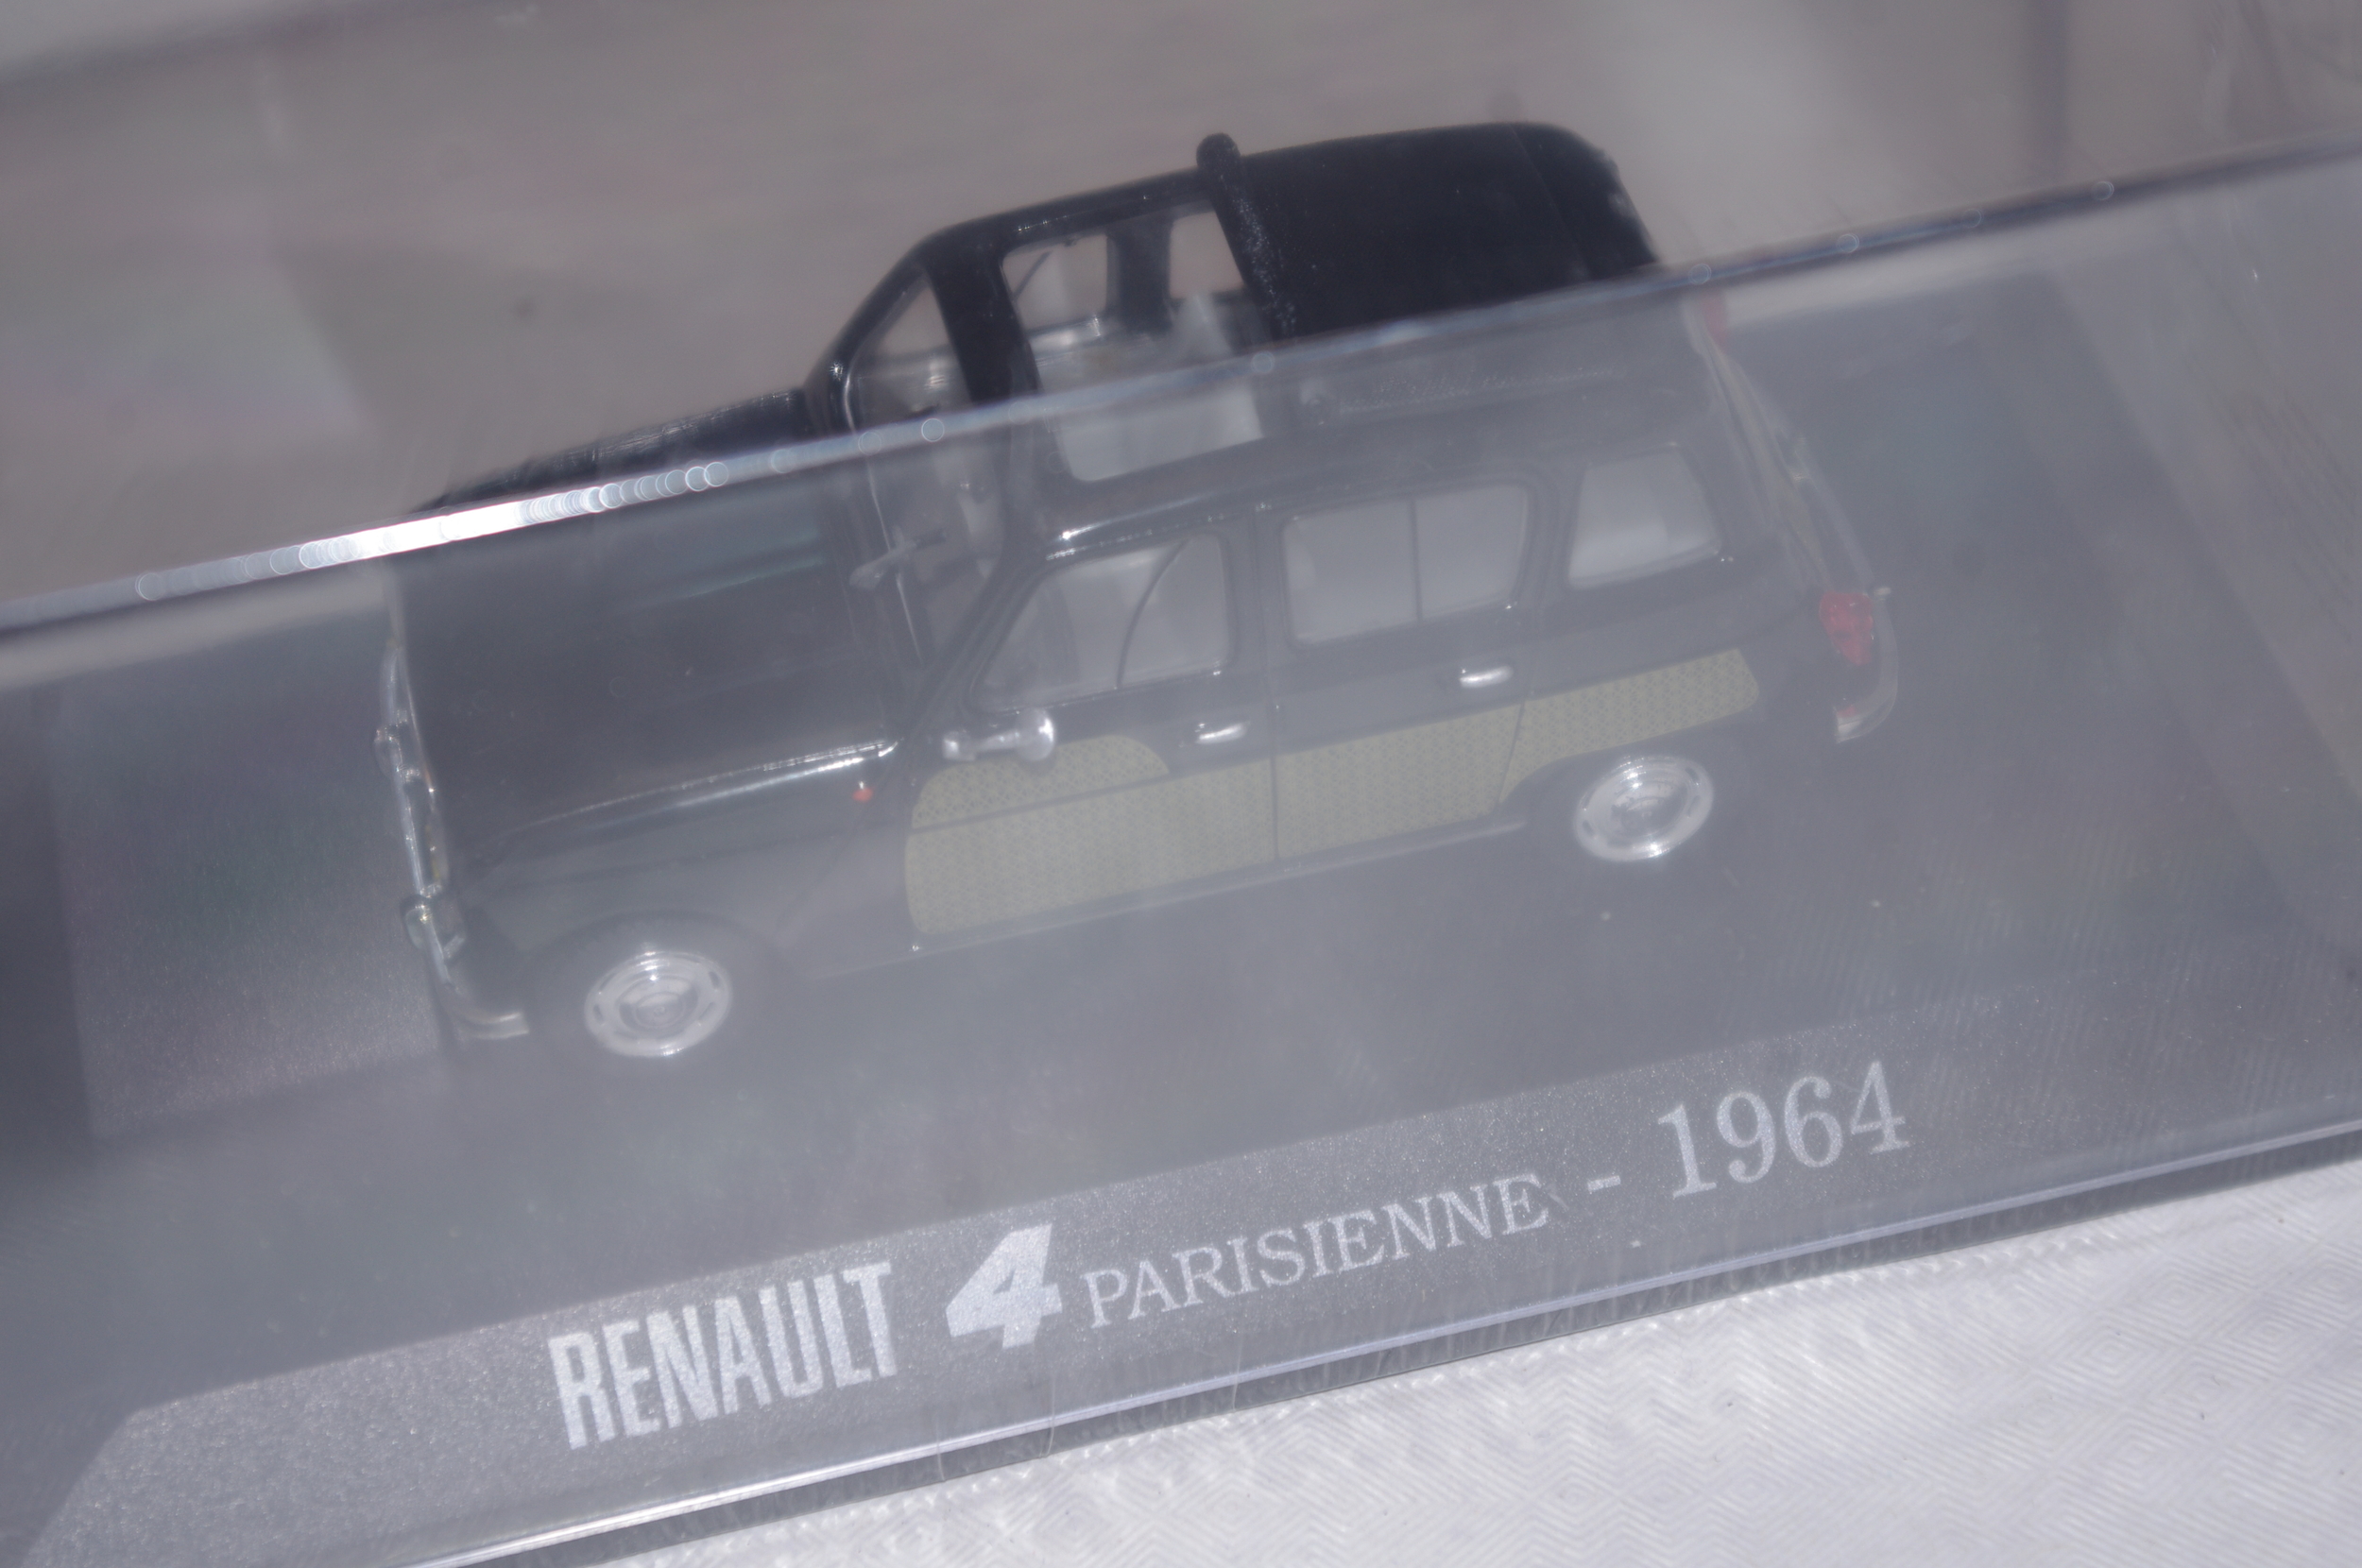 renault-4-parisienne-1964-r4-Universal-hobbies-lemasterbrockers